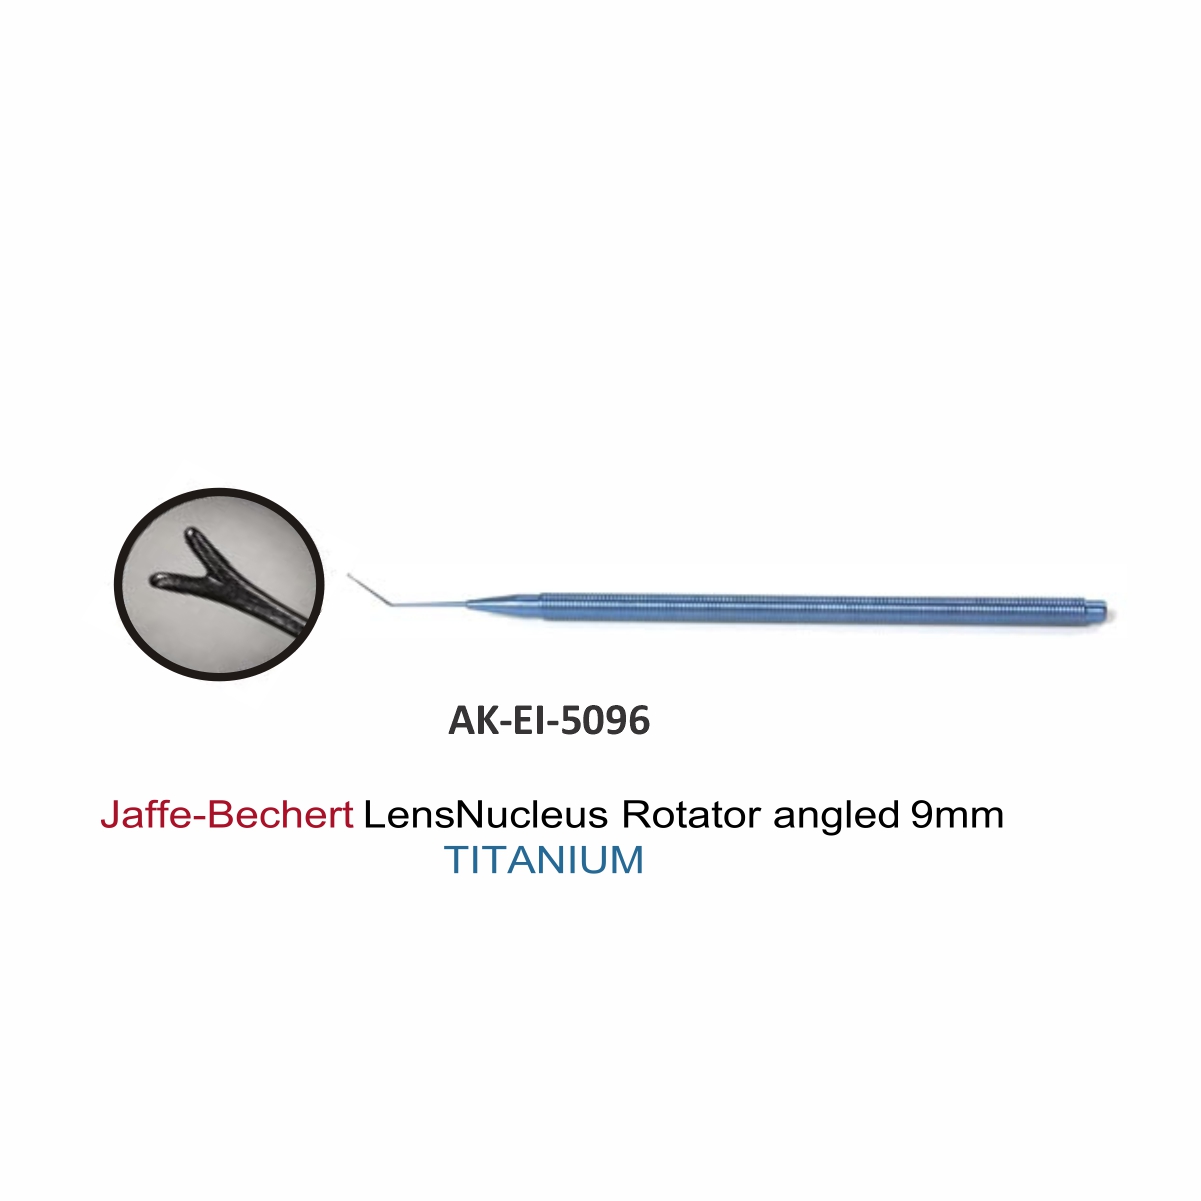 Jaffe-Bechert Lens Nucleus Rotator